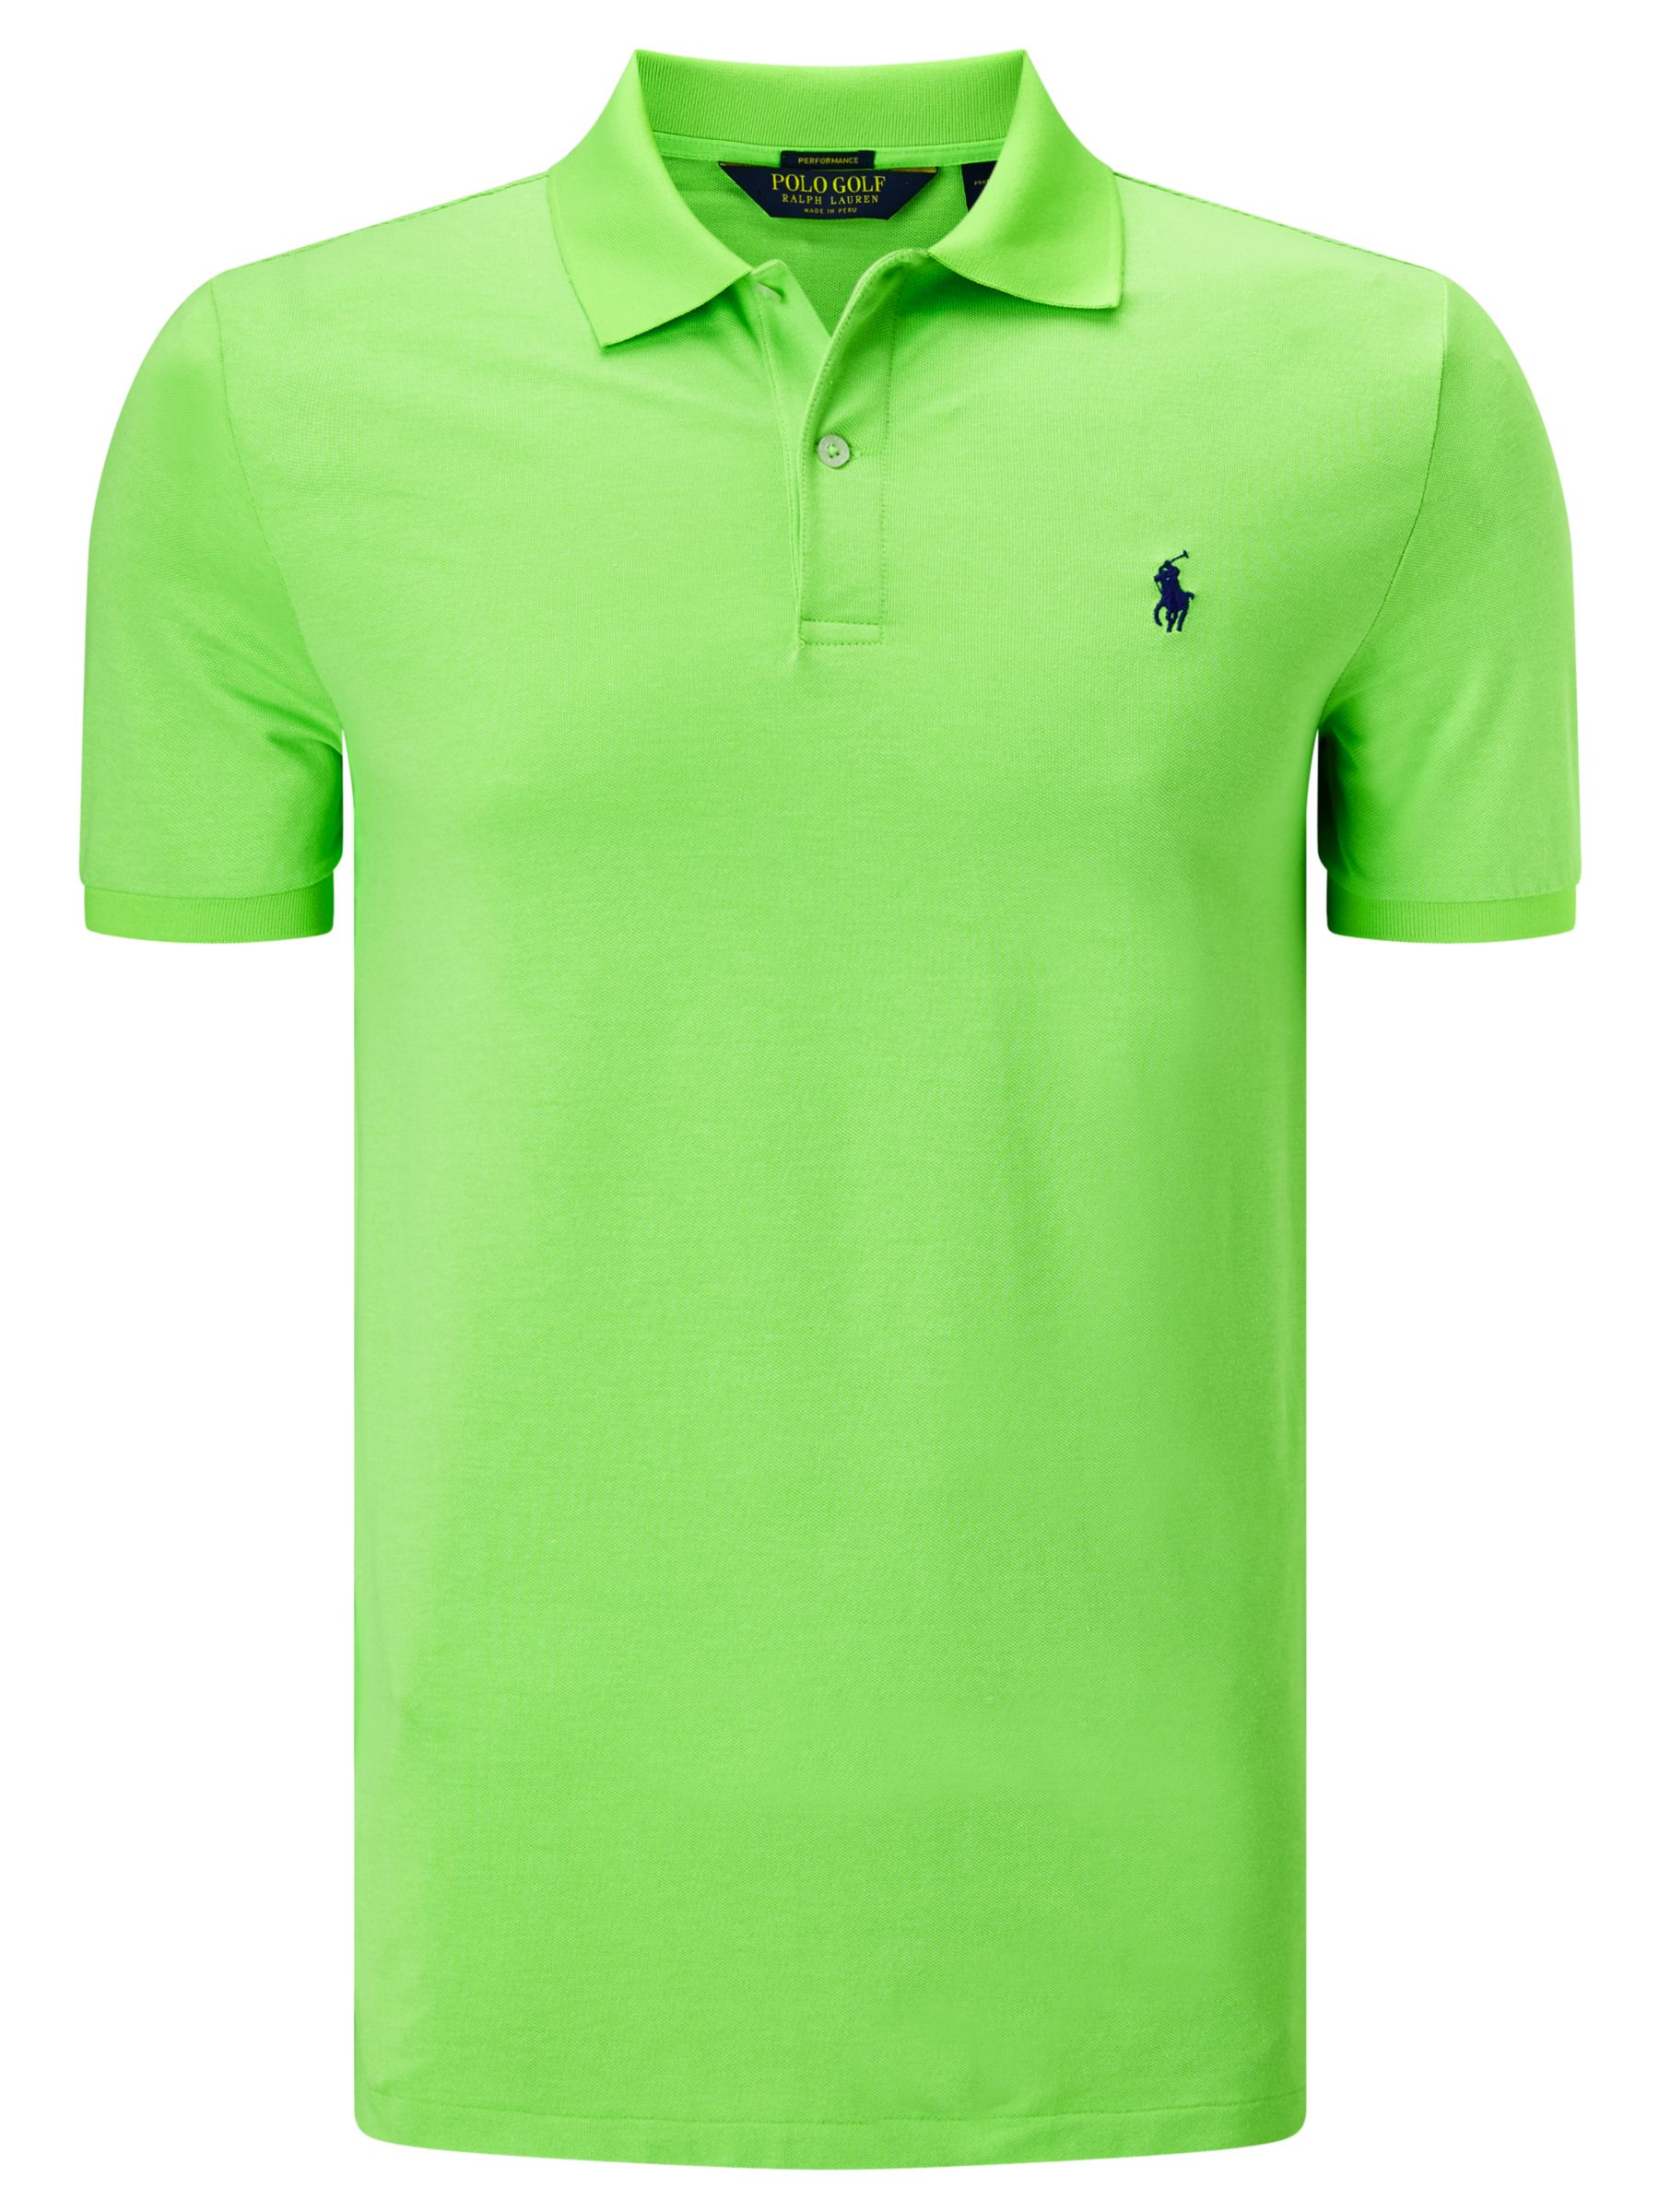 lime green ralph lauren polo shirt